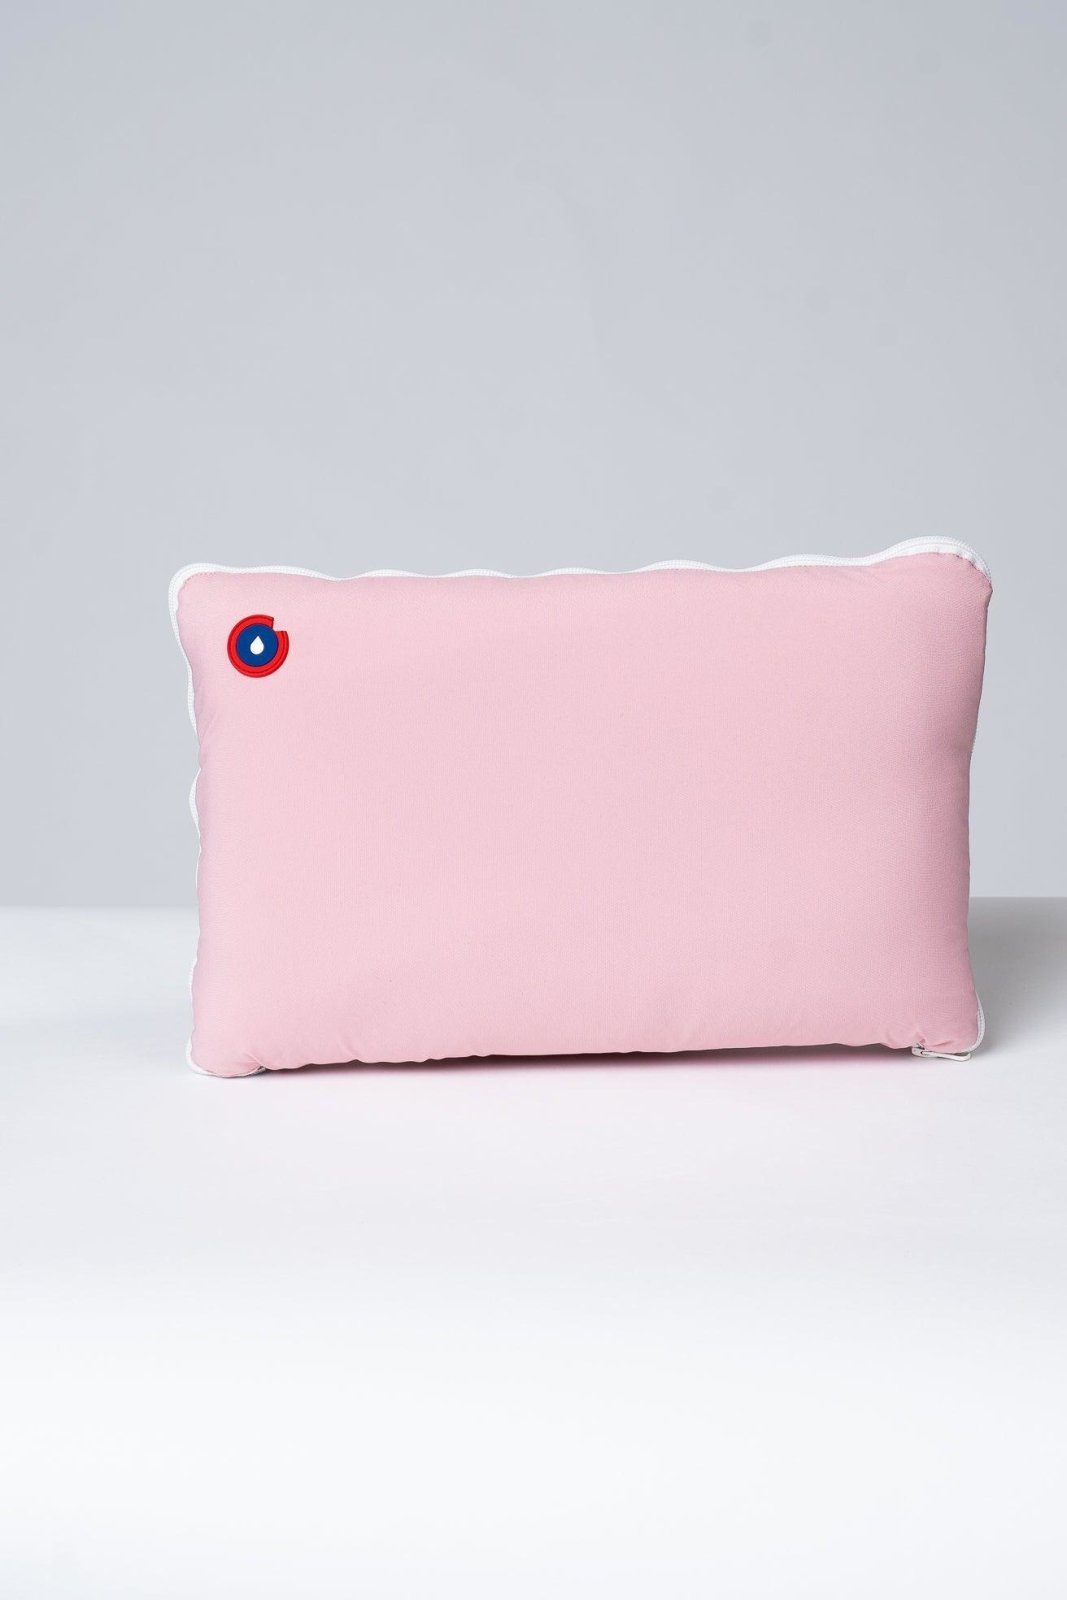 2-in-1 Cushion Throw - Flotte #couleur_bonbon